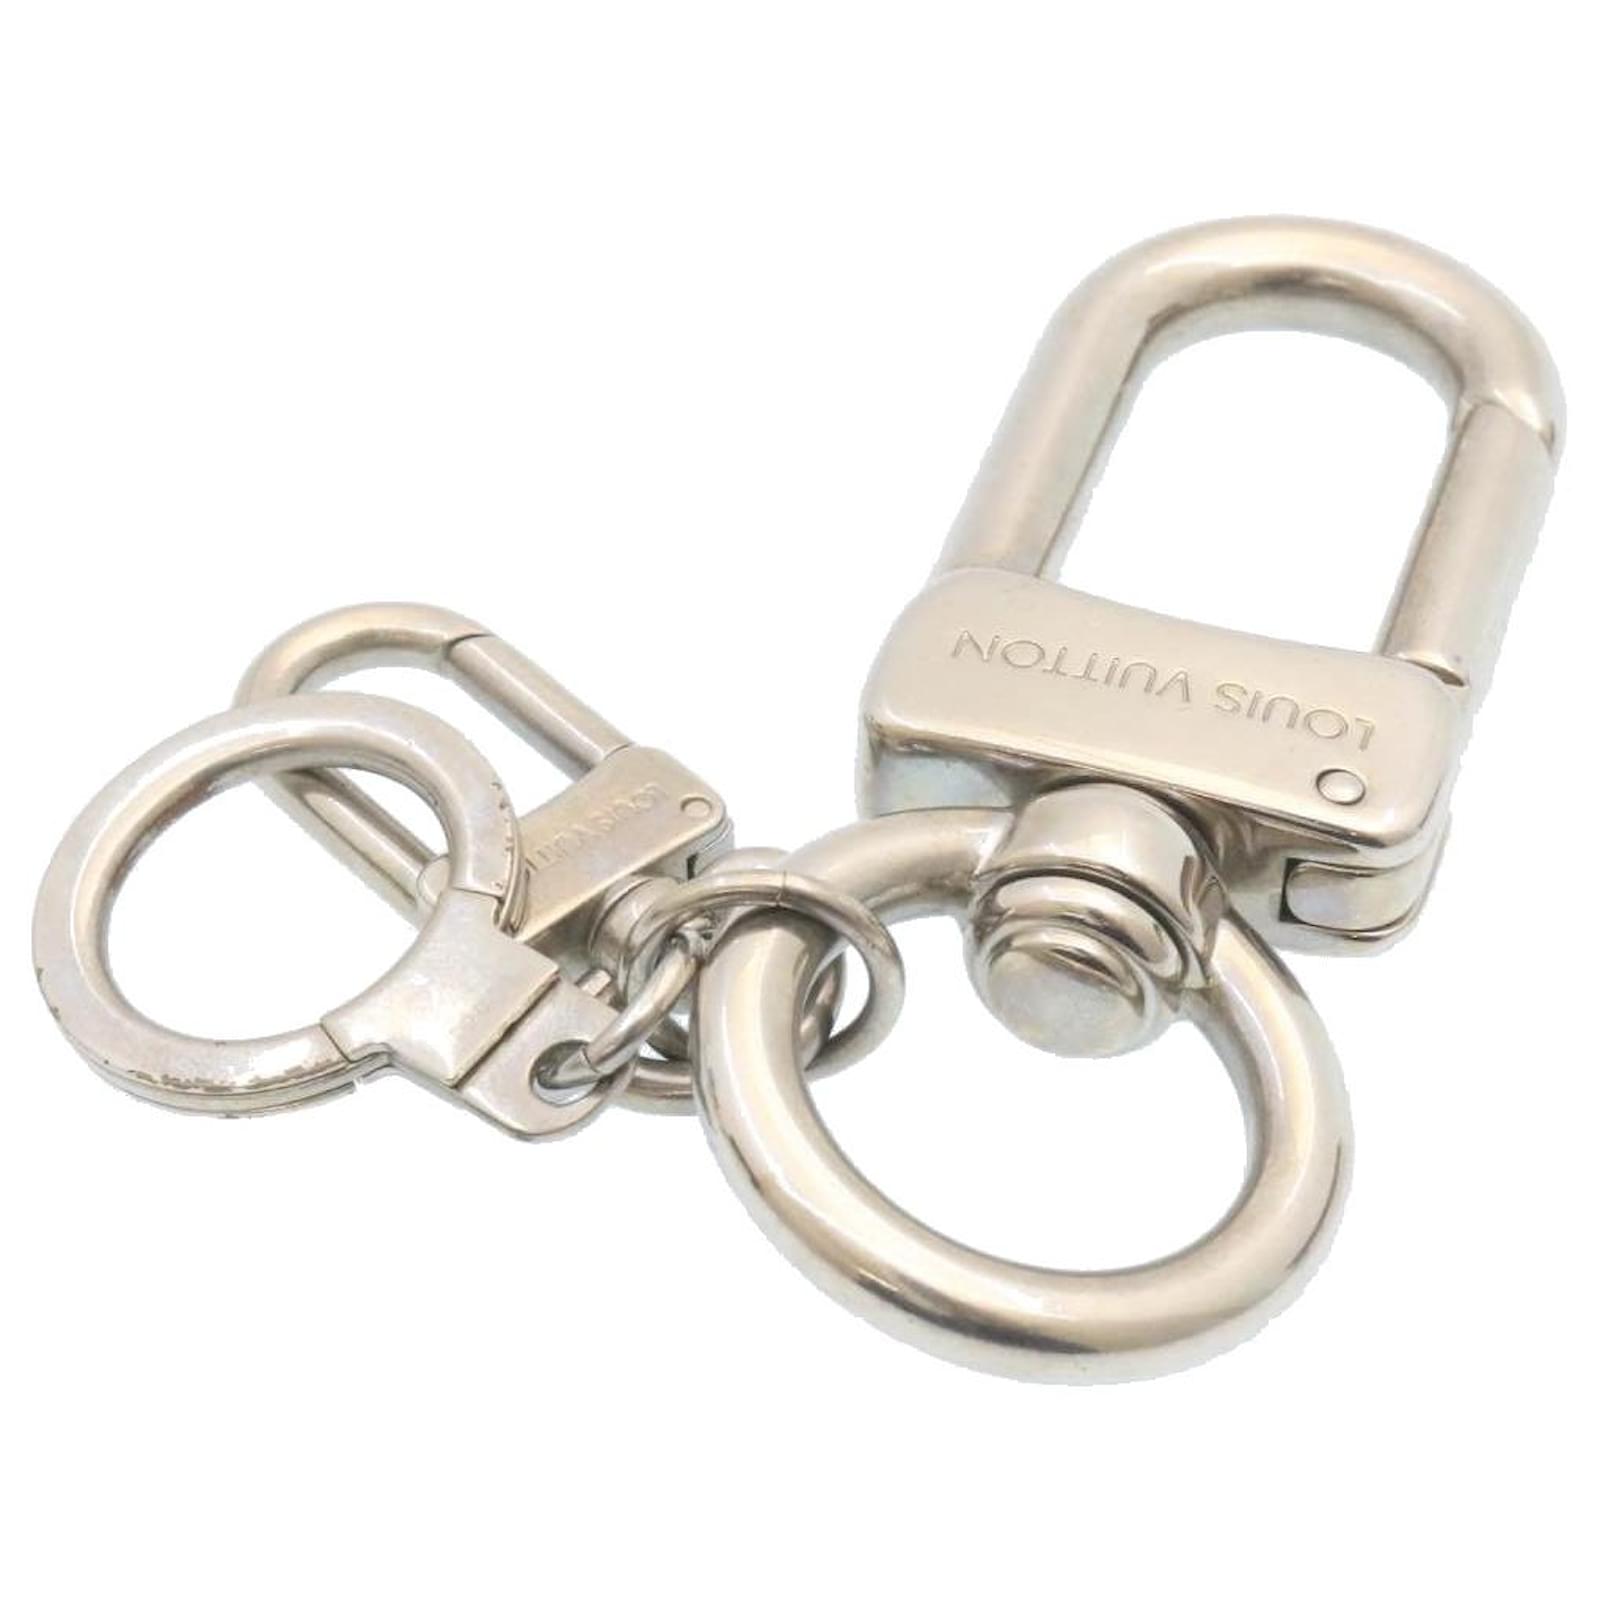 LOUIS VUITTON Anneau Cles Mousqueton XL Bag Charm Key Chain Ring M65769  05MY956